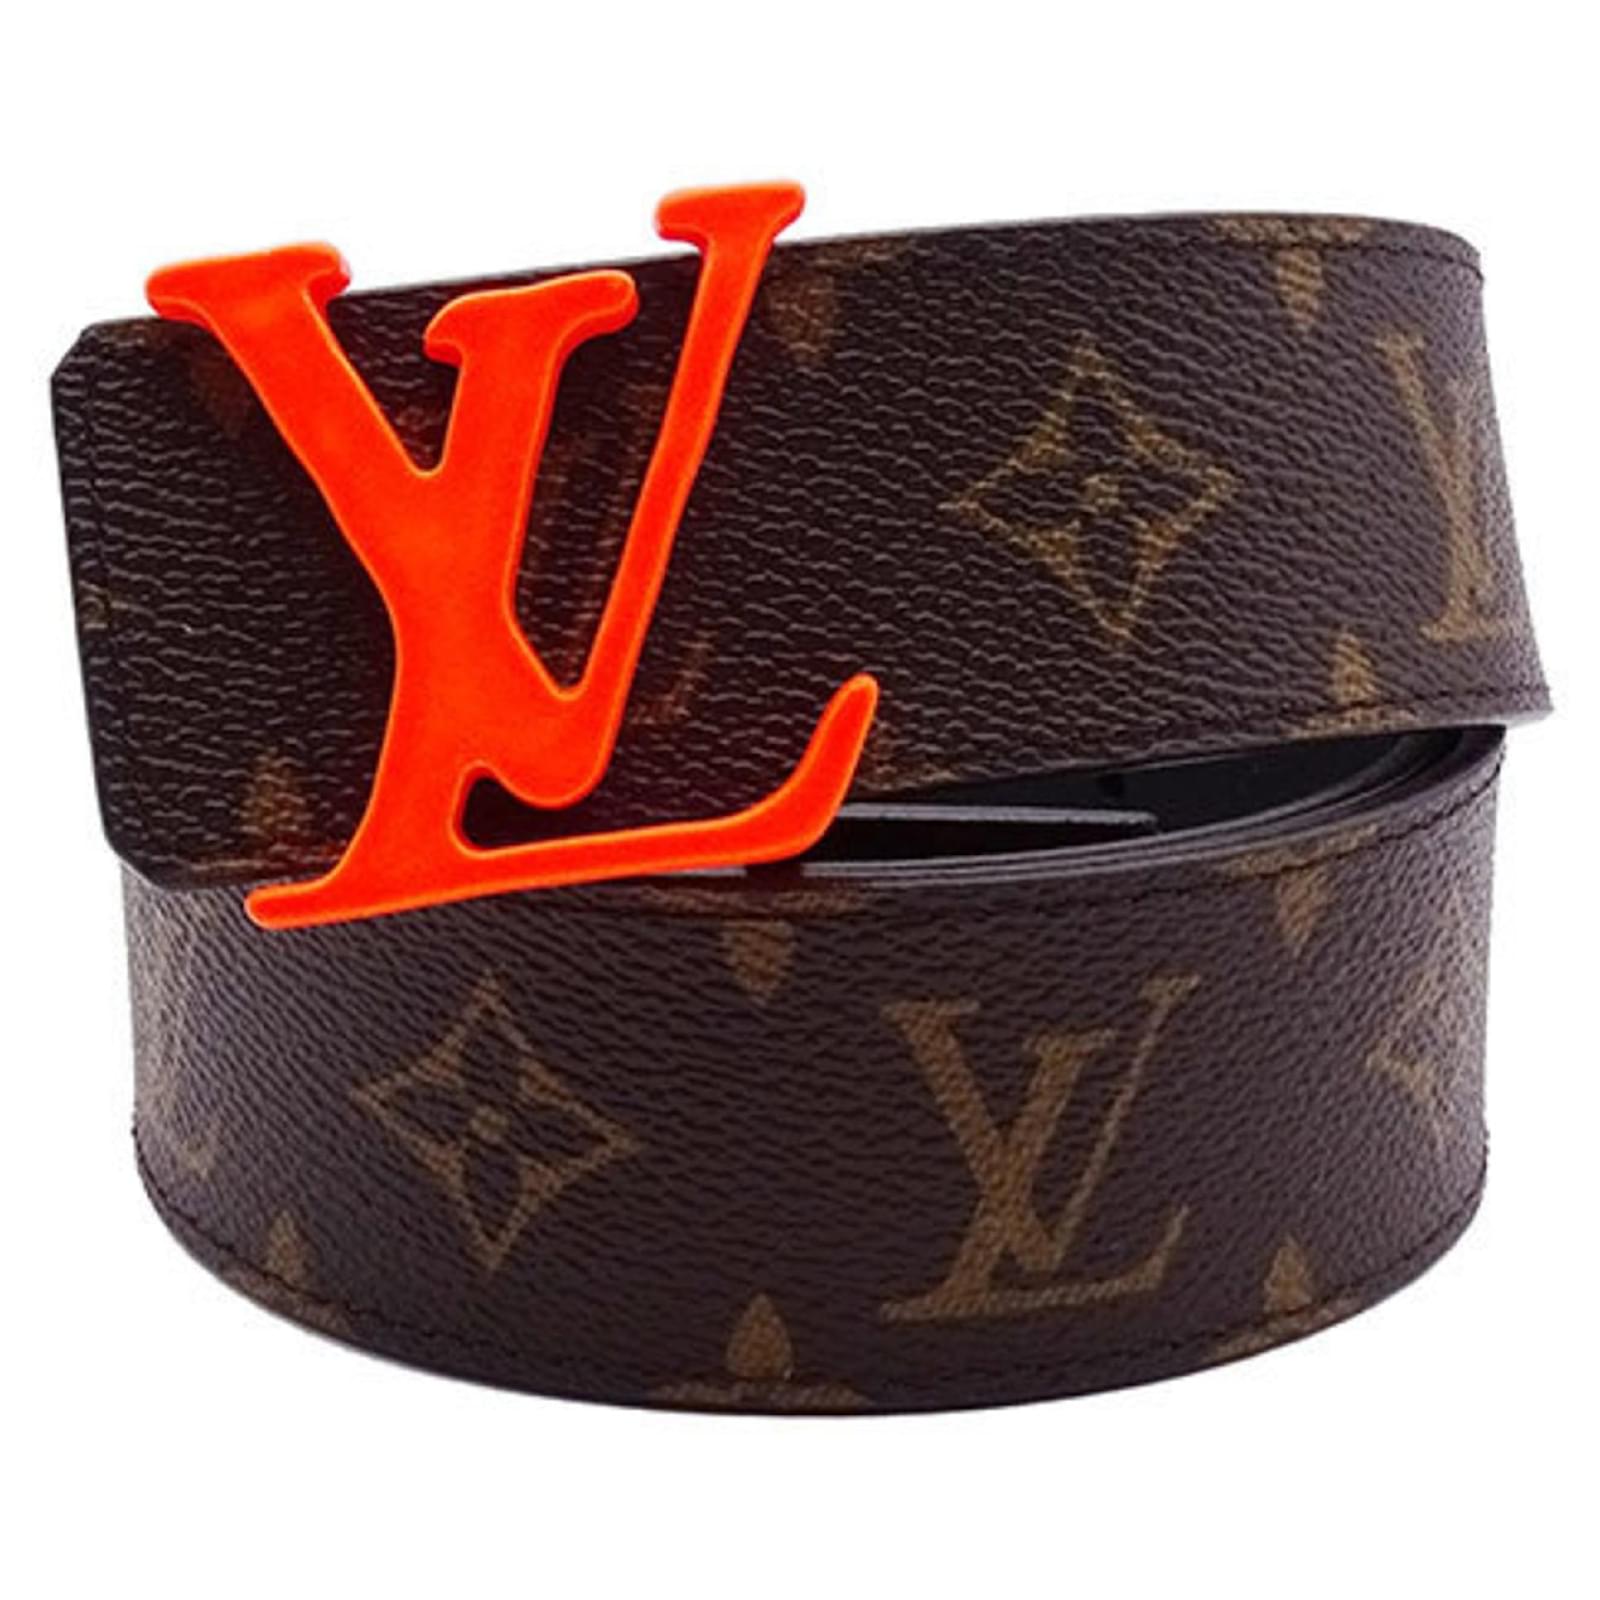 Louis Vuitton Reversible Belt Belts for Men